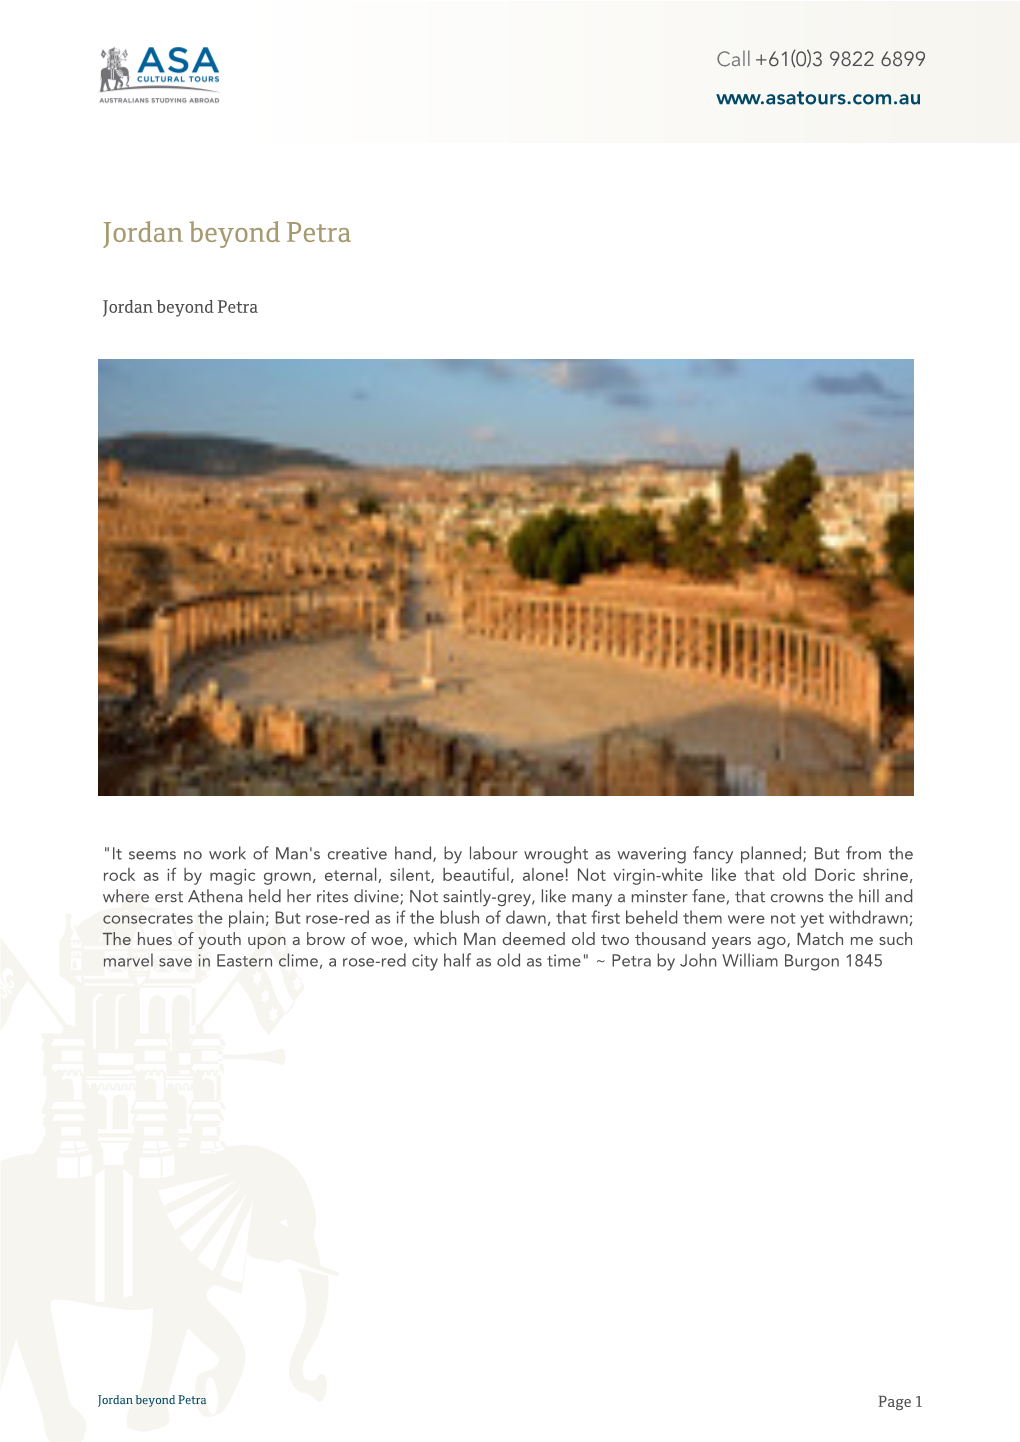 Jordan Beyond Petra